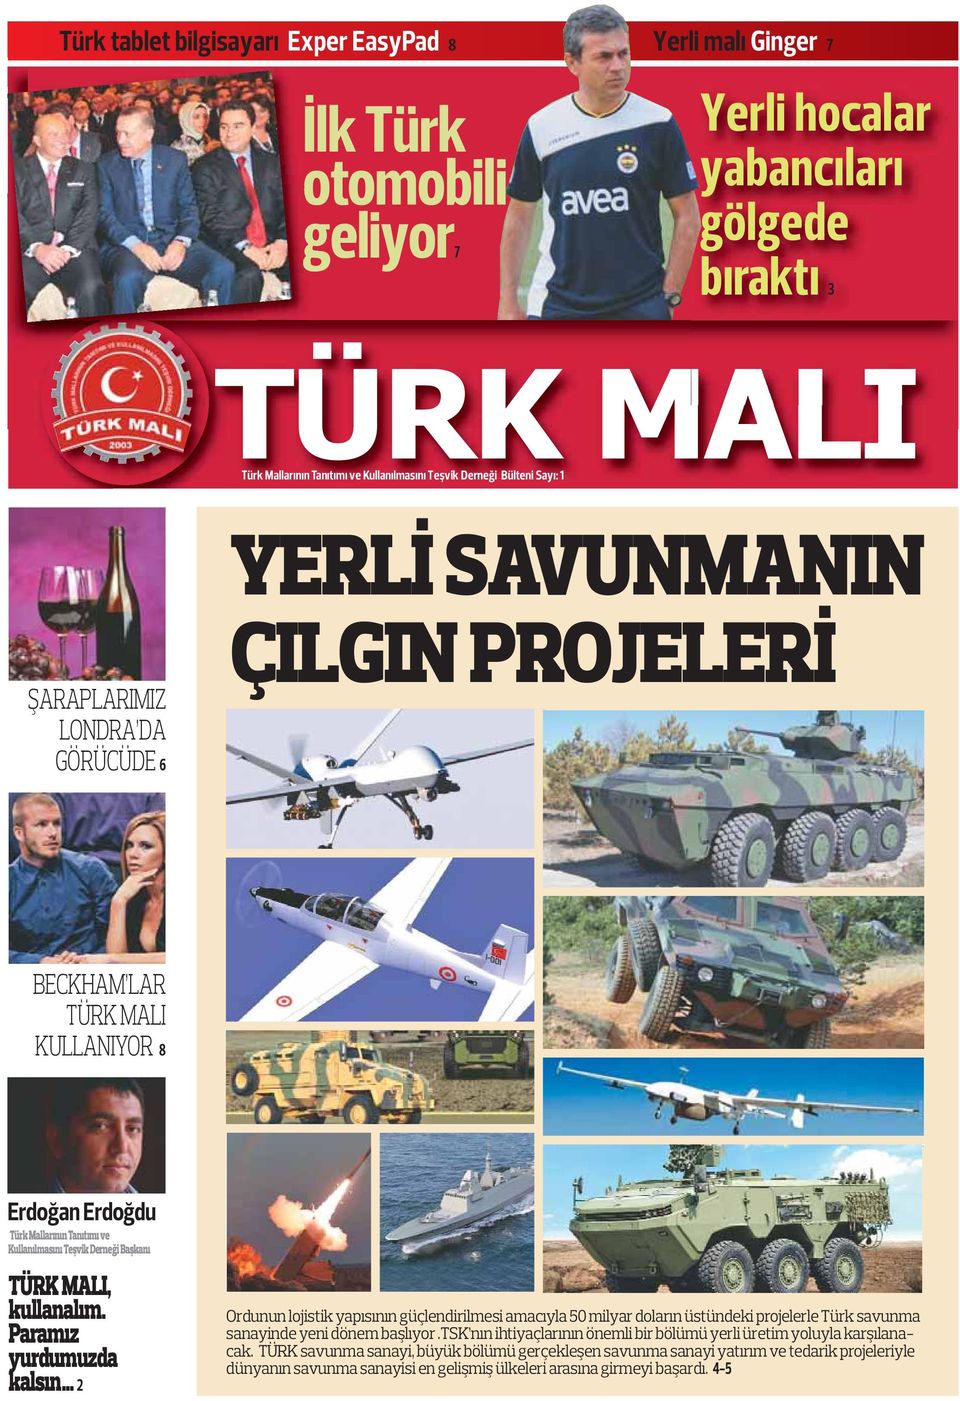 Başkanı TÜRK MALI, kullanalım. Paramız yurdumuzda kalsın 2 Ordunun lojistik yapısının güçlendirilmesi amacıyla 50 milyar doların üstündeki projelerle Türk savunma sanayinde yeni dönem başlıyor.